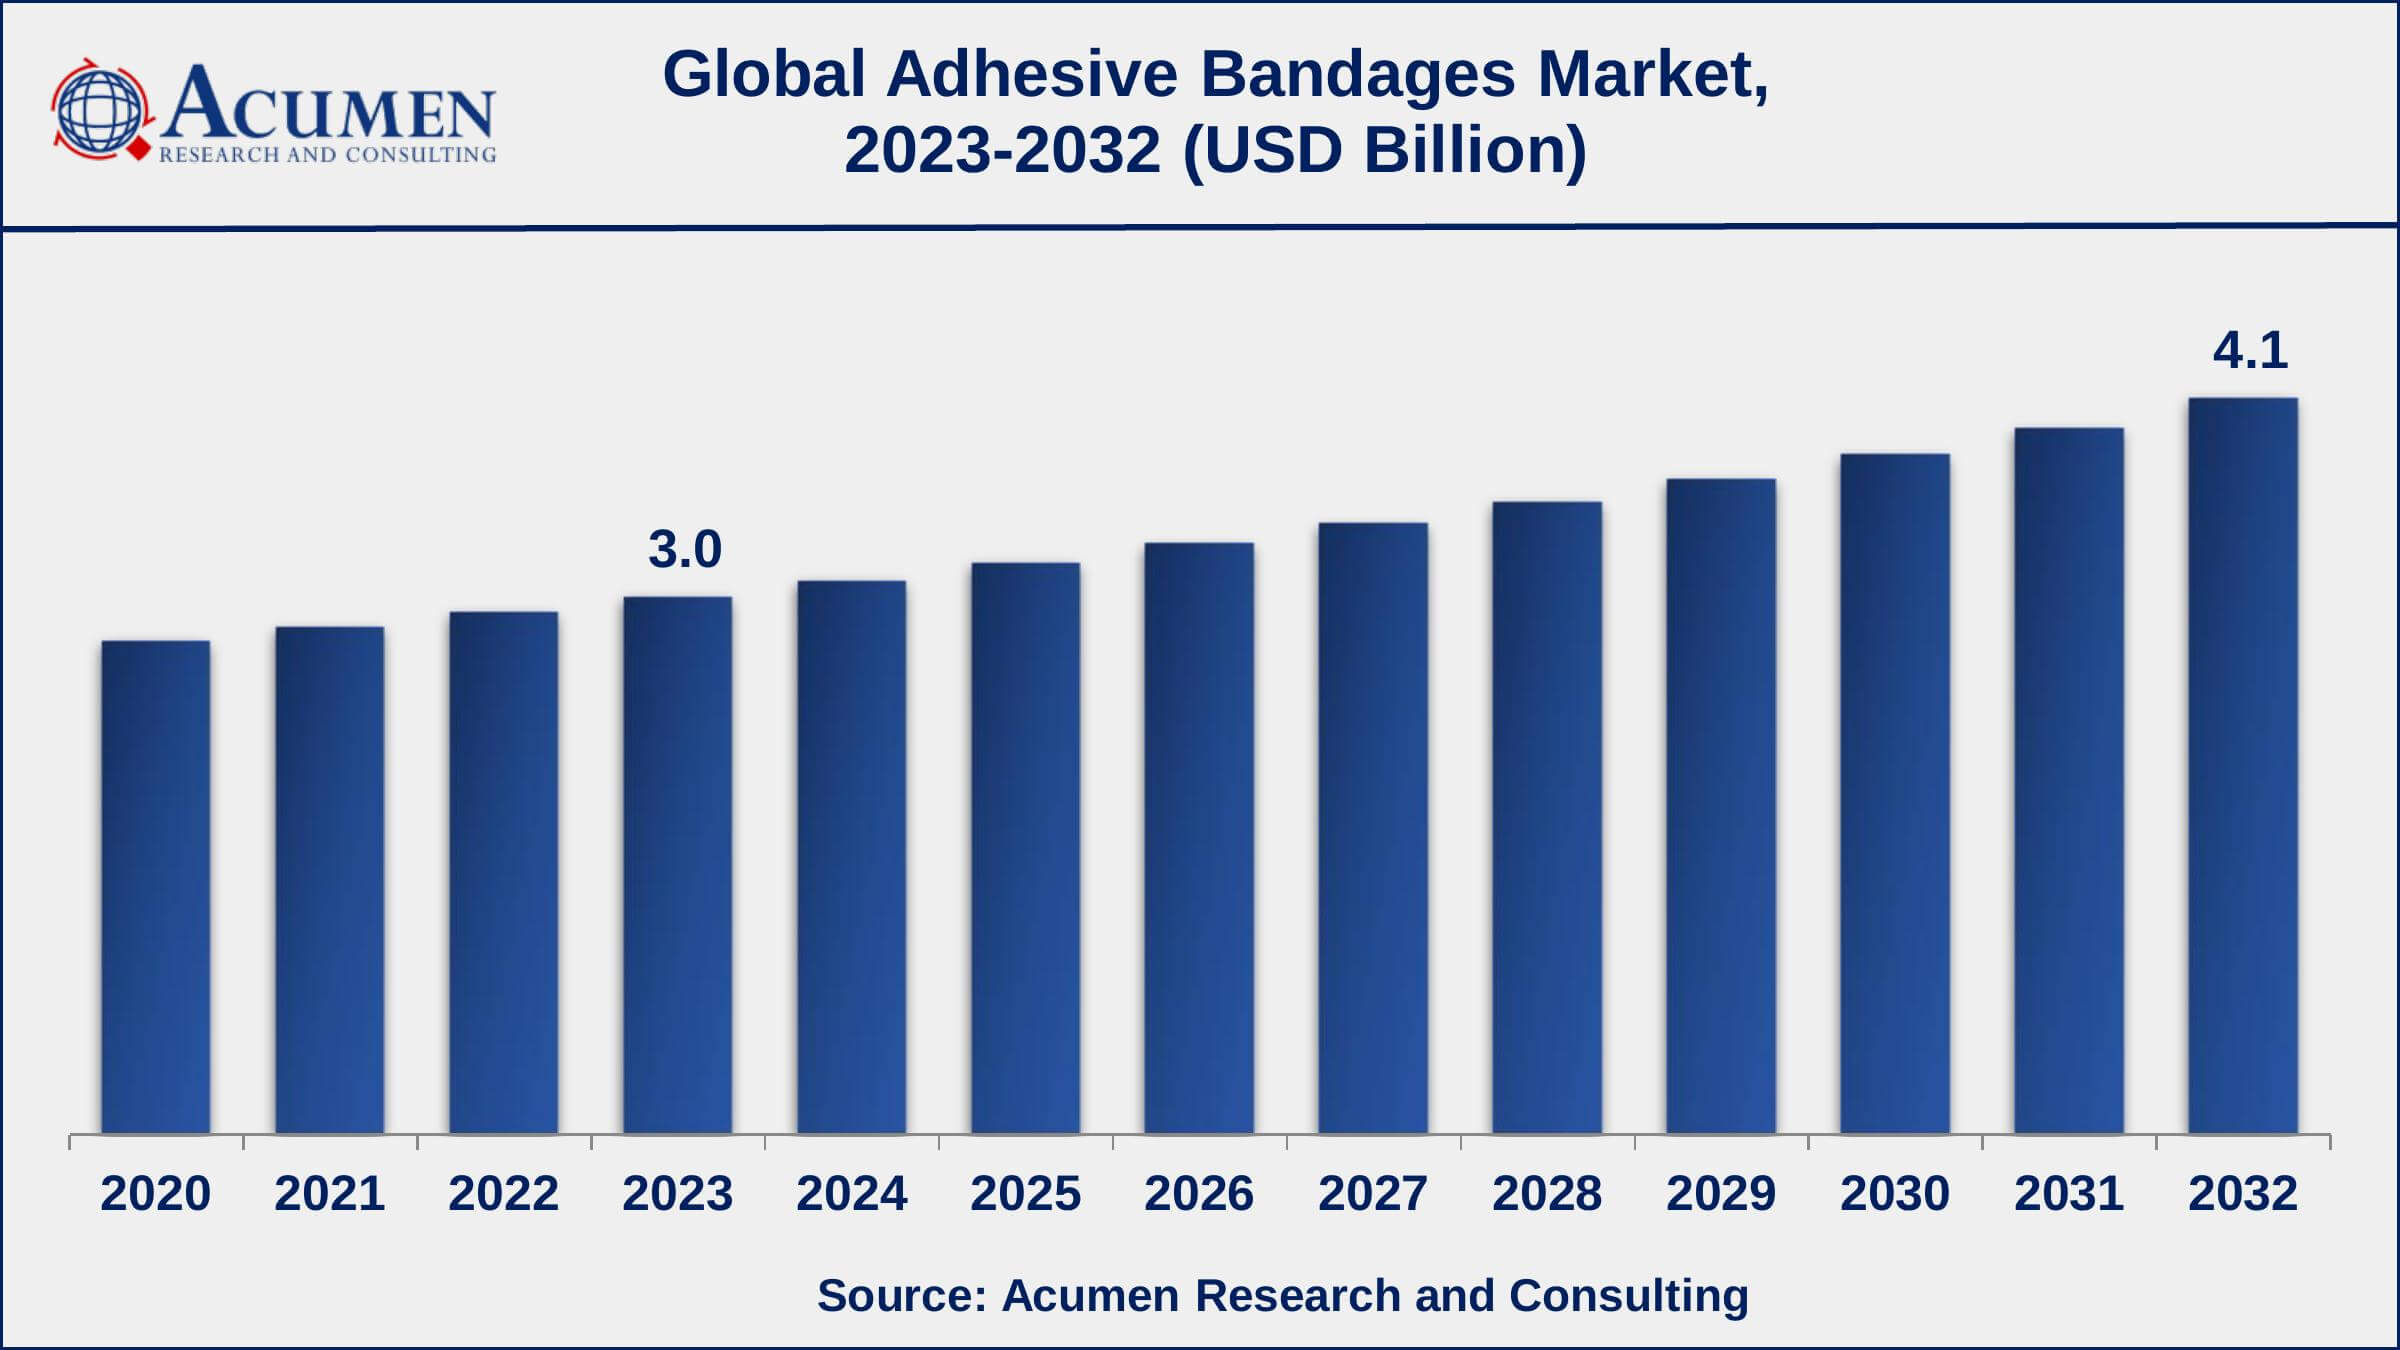 Global Adhesive Bandages Market Dynamics